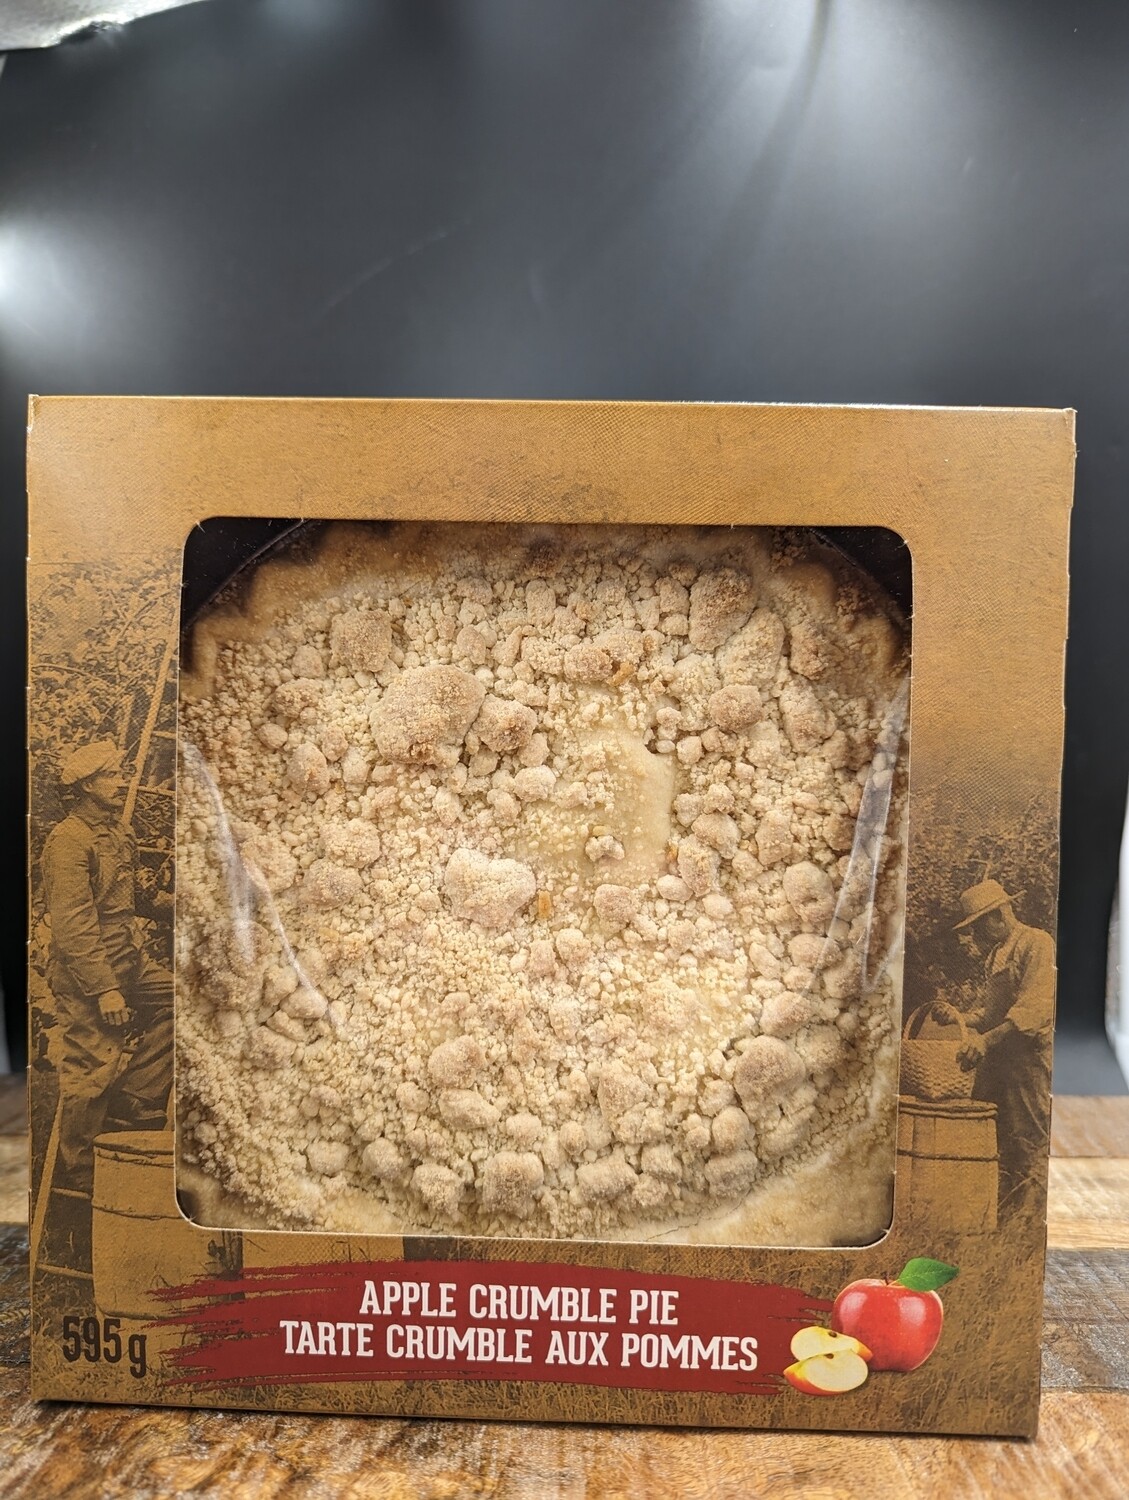 Apple Crumble Pie 595g